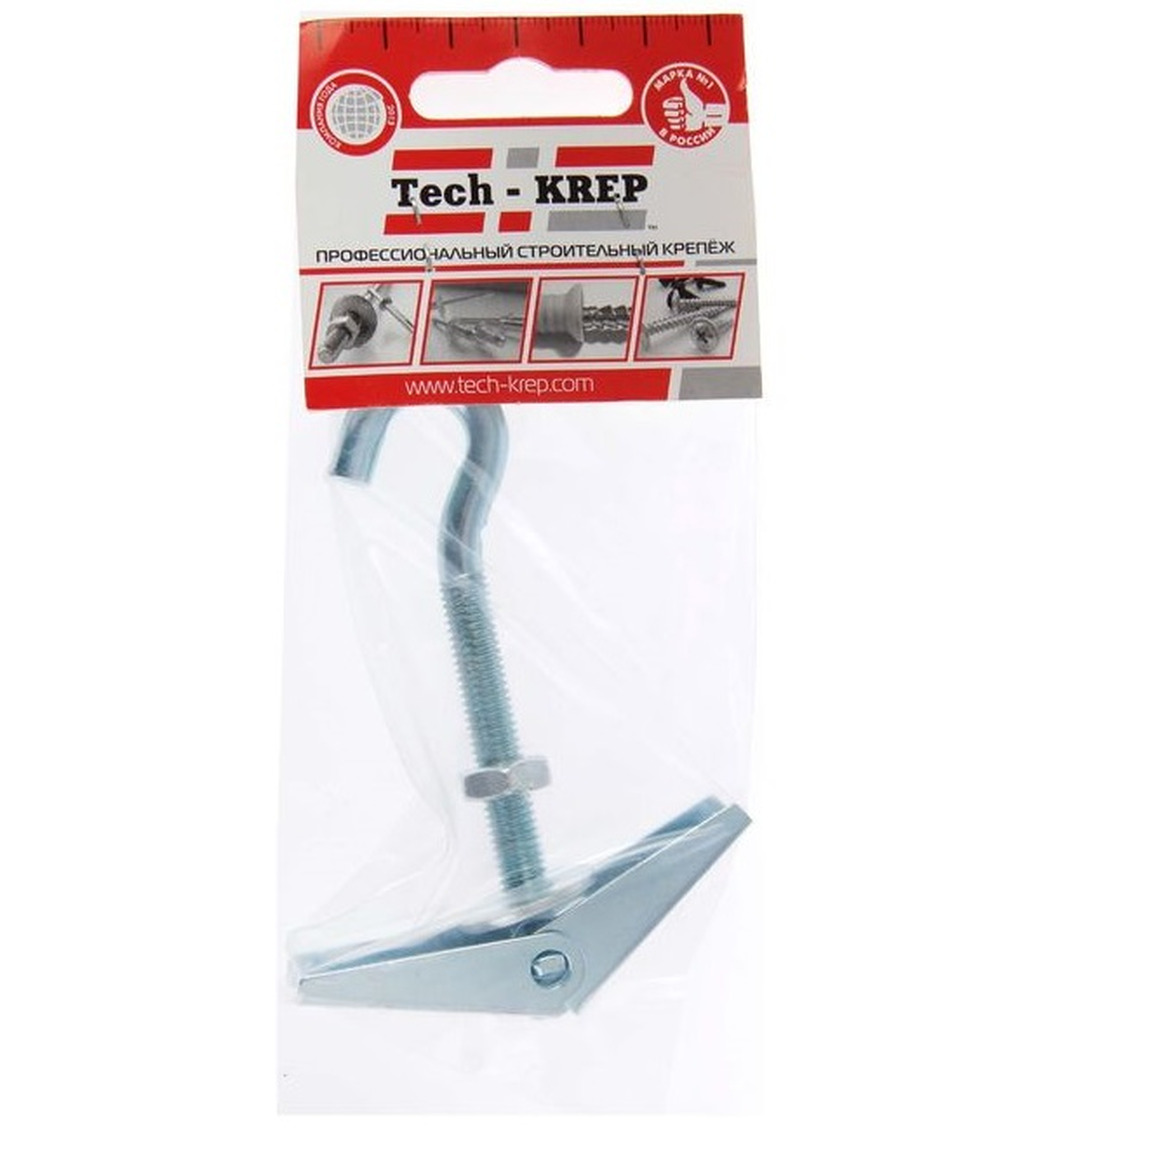 Анкер складной пружинный с крюком М8 1 шт - пакет Tech-Krep 103901 цена и фото